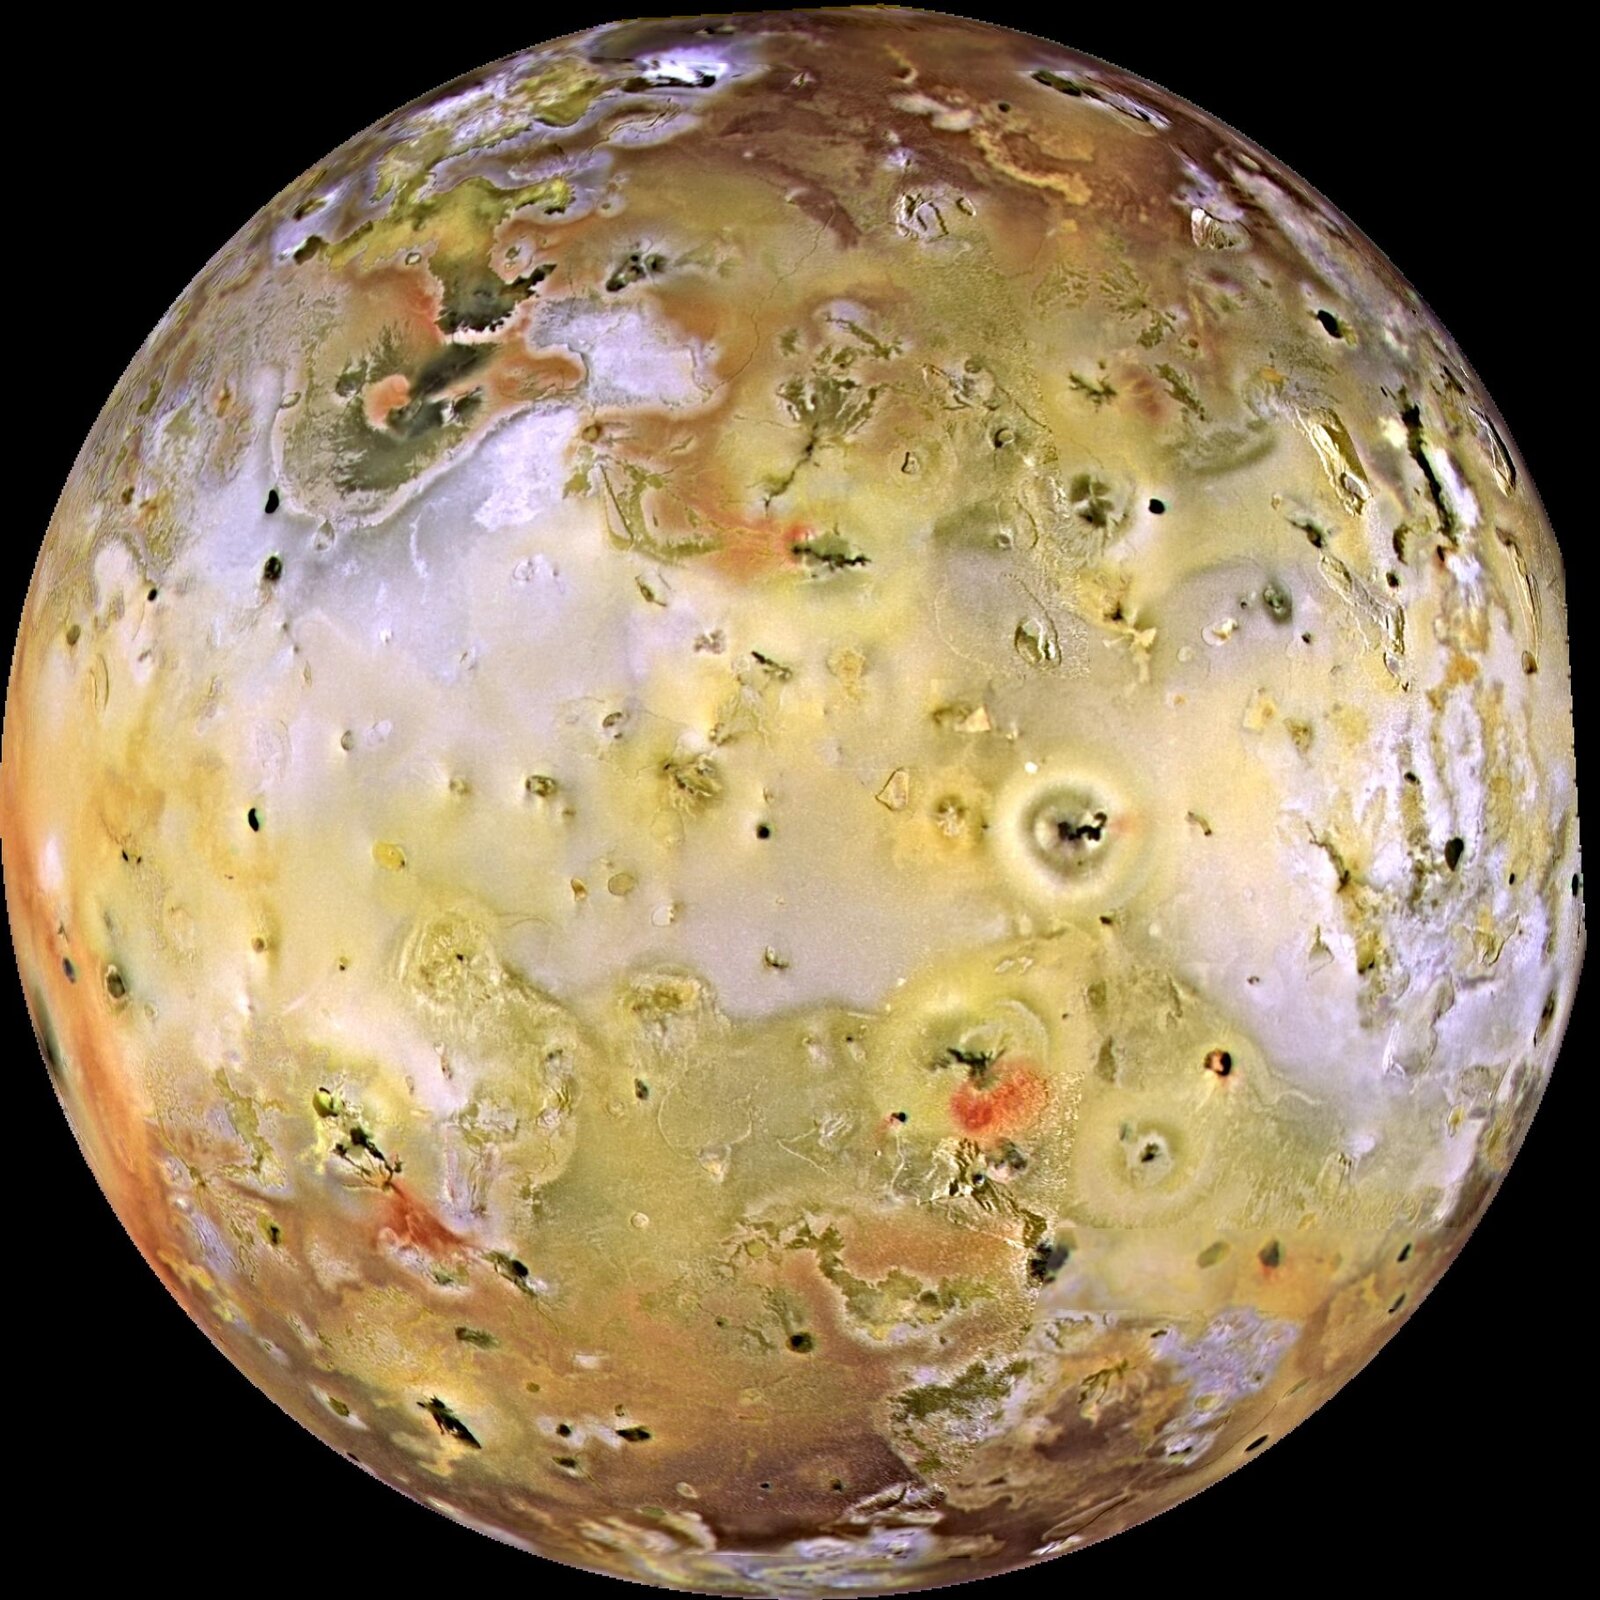 Rys. 4. Ilustracja przedstawia zdjęcie jednego z księżyców Jowisza, Io. Na tle czarnej przestrzeni kosmicznej widoczna jest okrągła żółta planeta z ciemniejszymi plamami na powierzchni. Ciemne plany to góry oraz kratery znajdujące się na powierzchni księżyca.